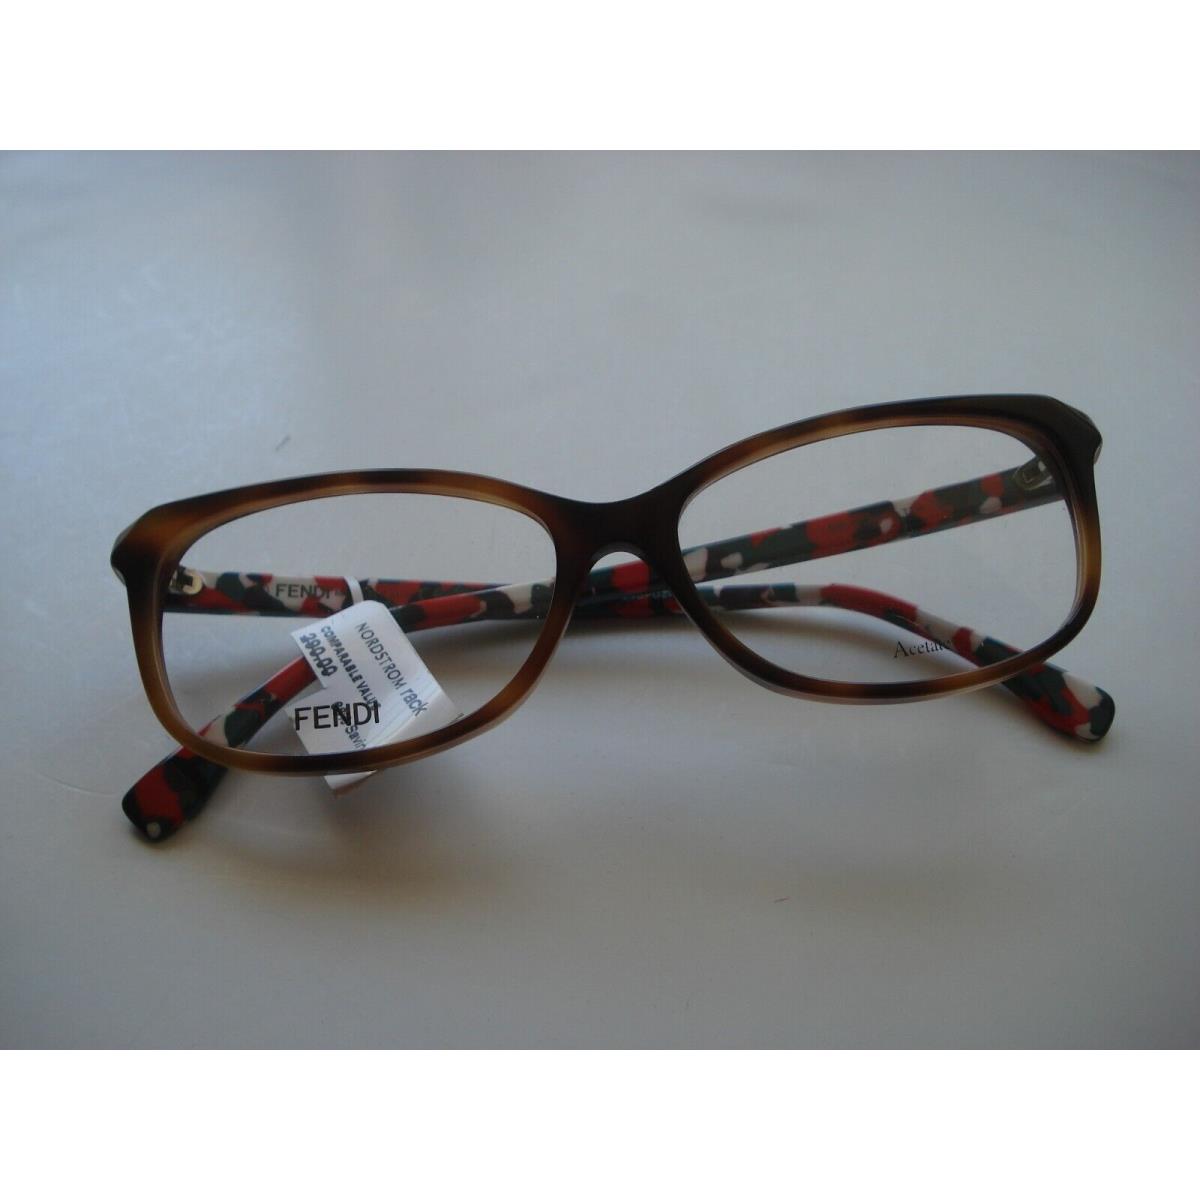 Fendi eyeglasses TTR - Brown Frame 3